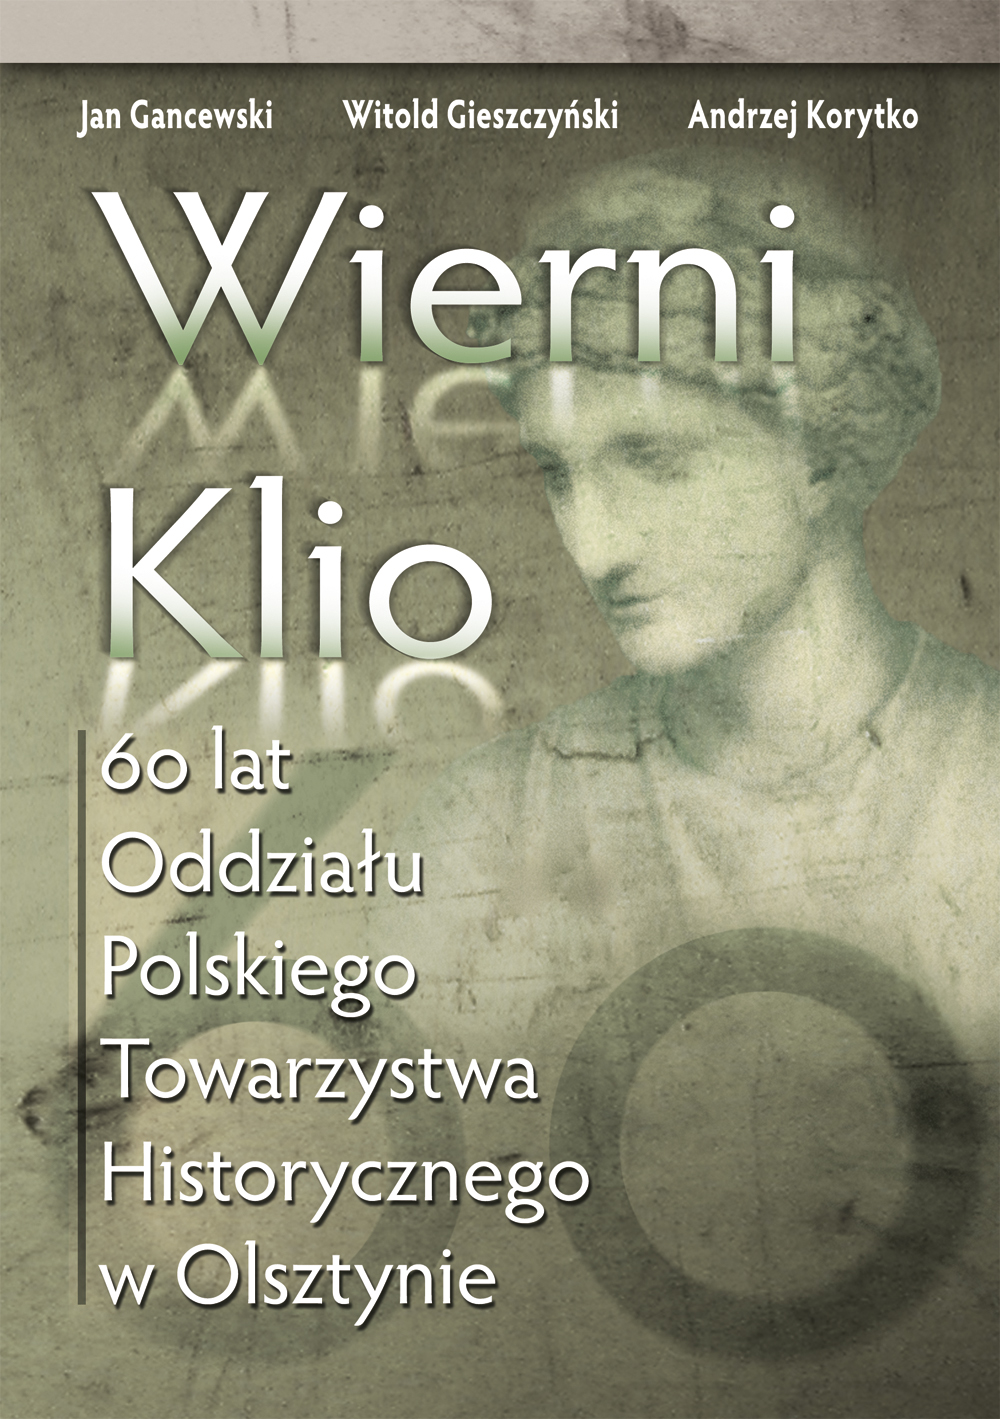 Okładka monografii poświęconej Oddziałowi, © Polskie Towarzystwo Historyczne Oddział w Olsztynie